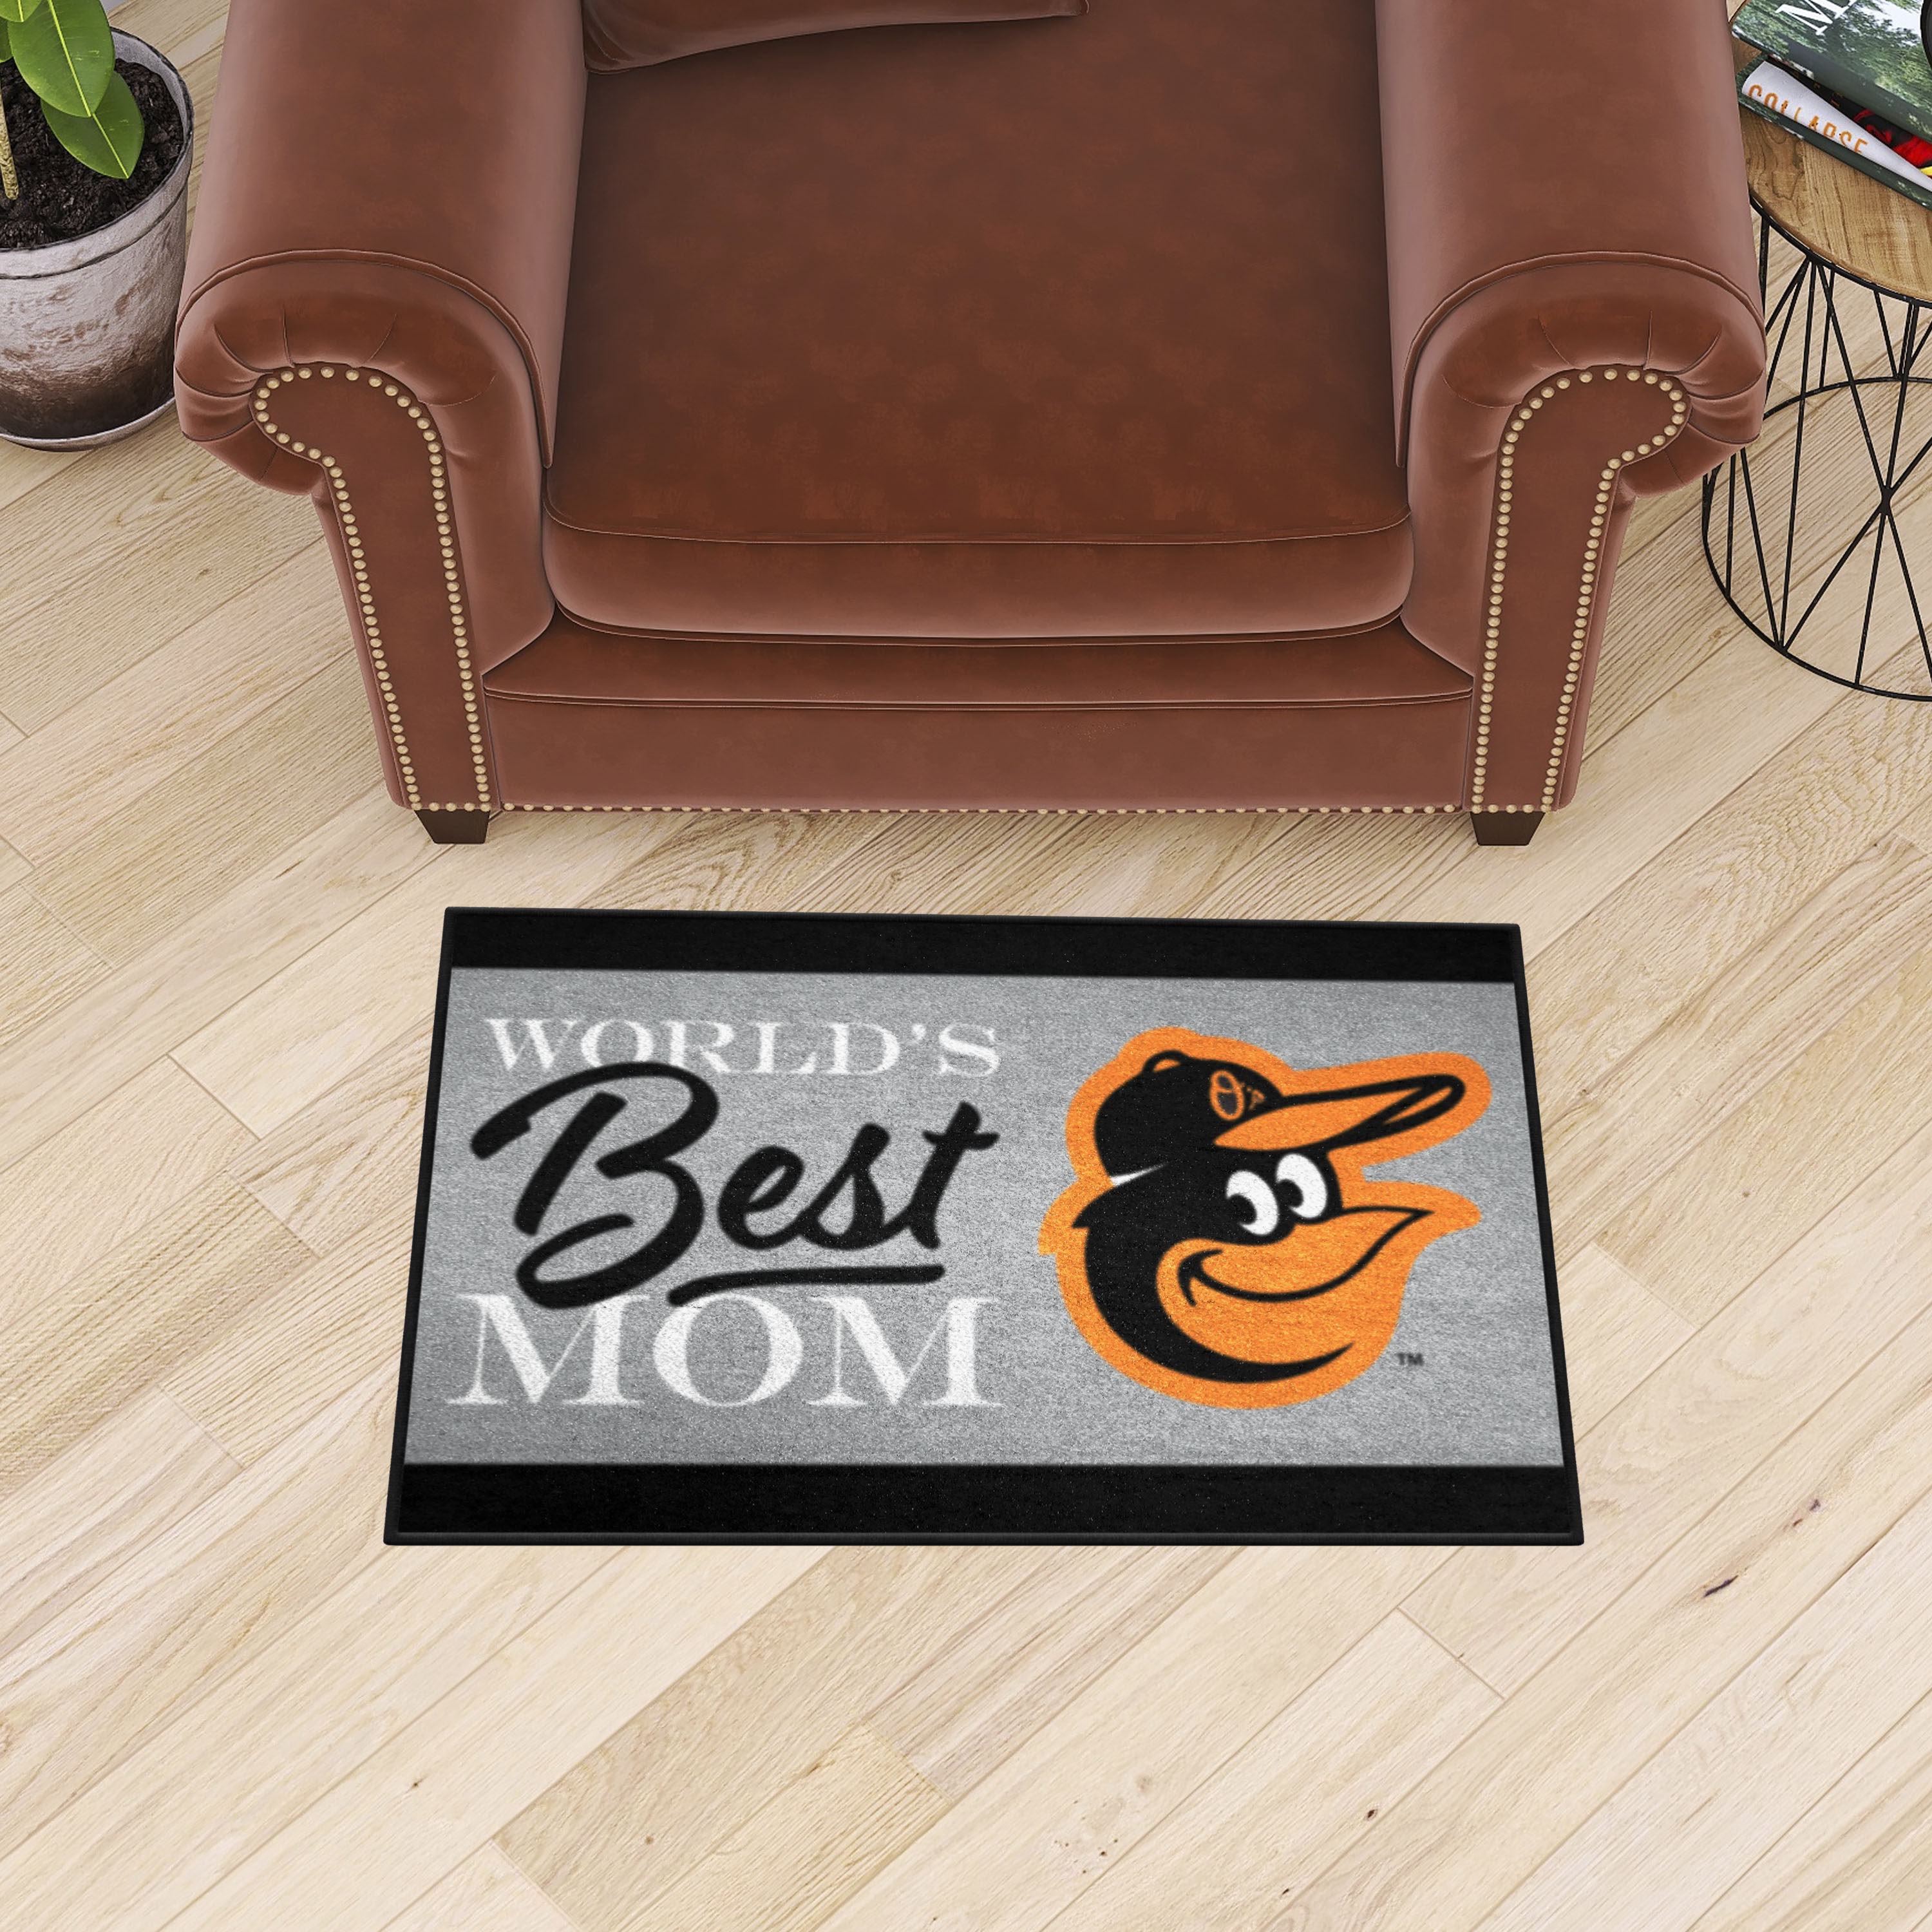 Baltimore Orioles World's Best Mom Starter Doormat - 19 x 30